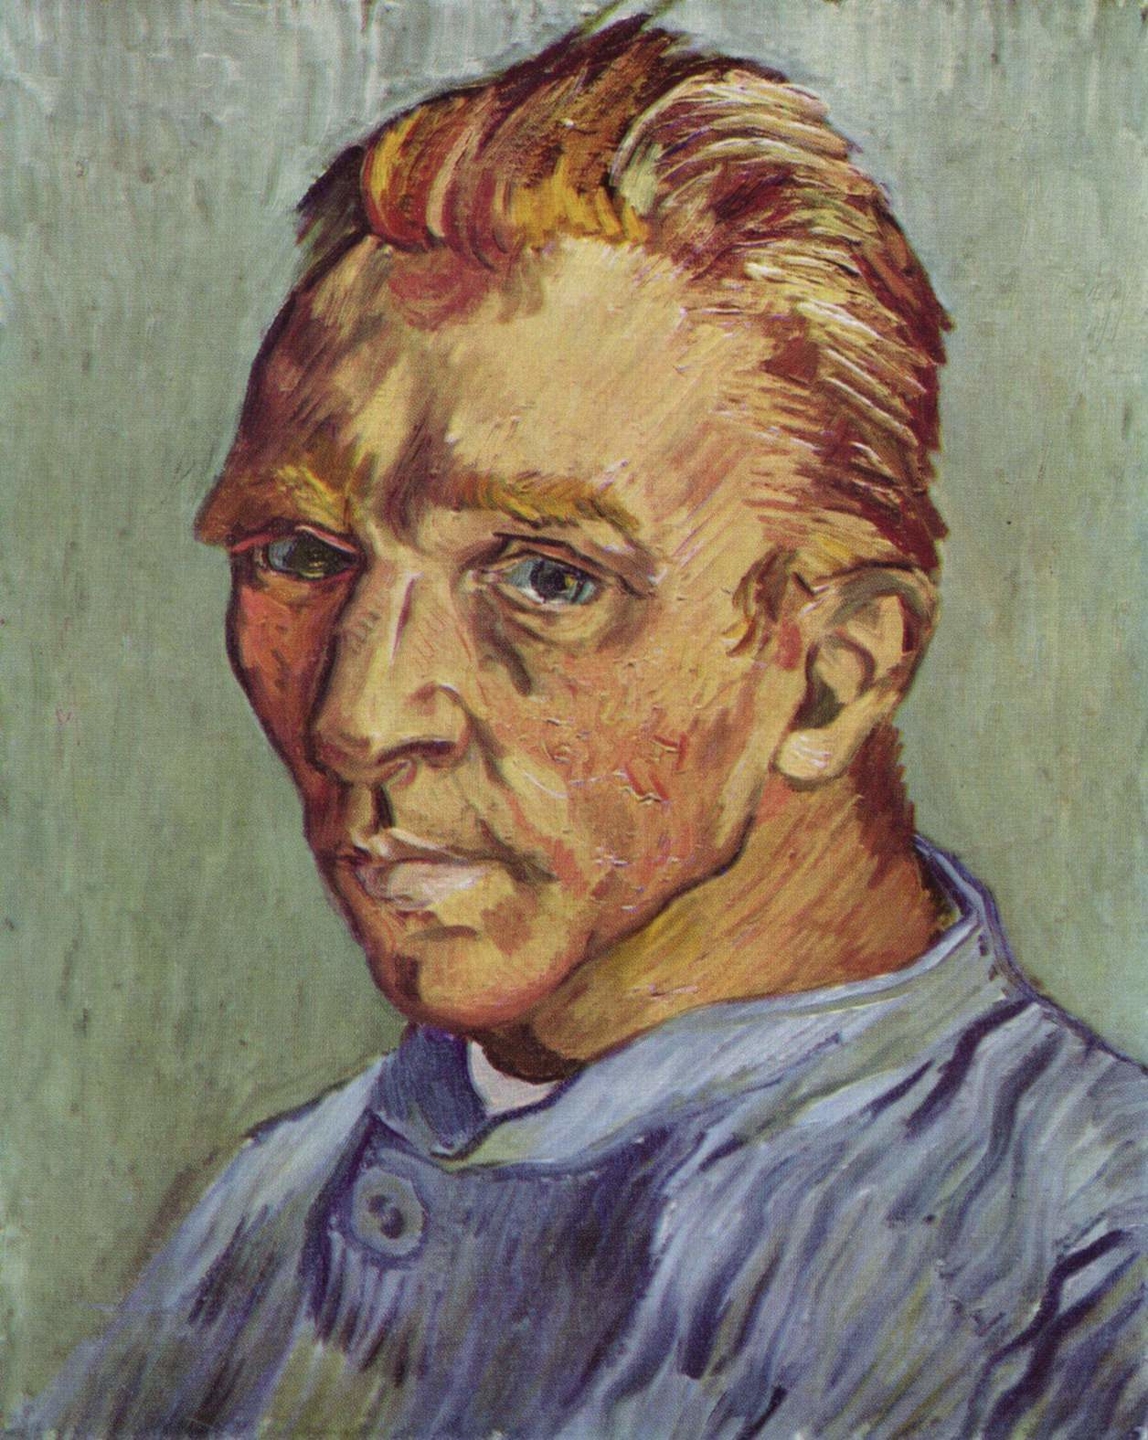 How many paintings did Van Gogh paint in asylum?